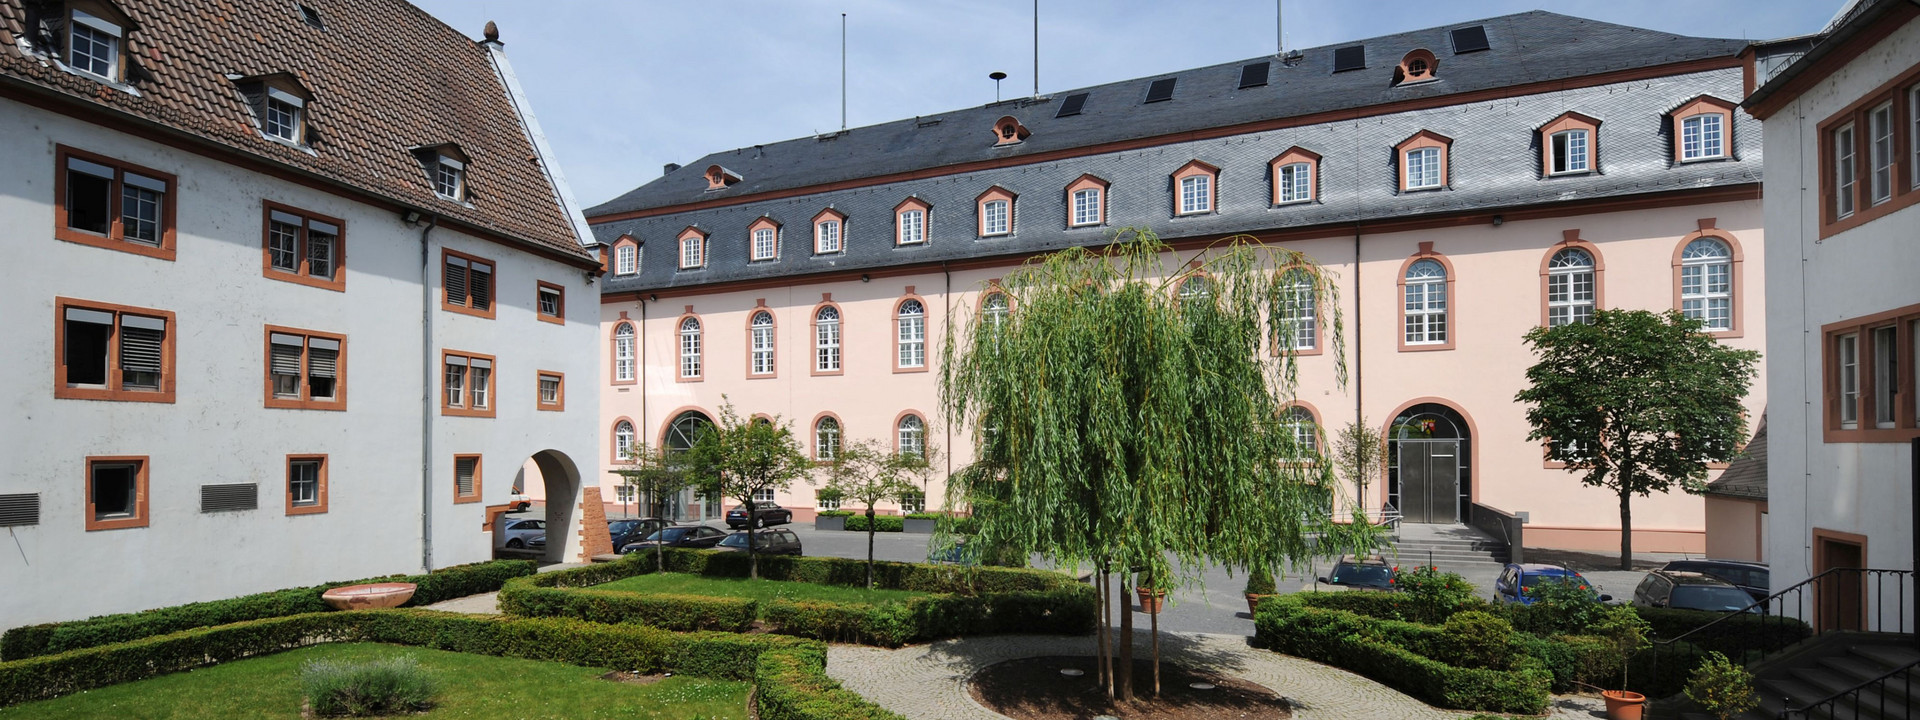 Ansicht vom Innenhof der Staatskanzlei Rheinland-Pfalz.